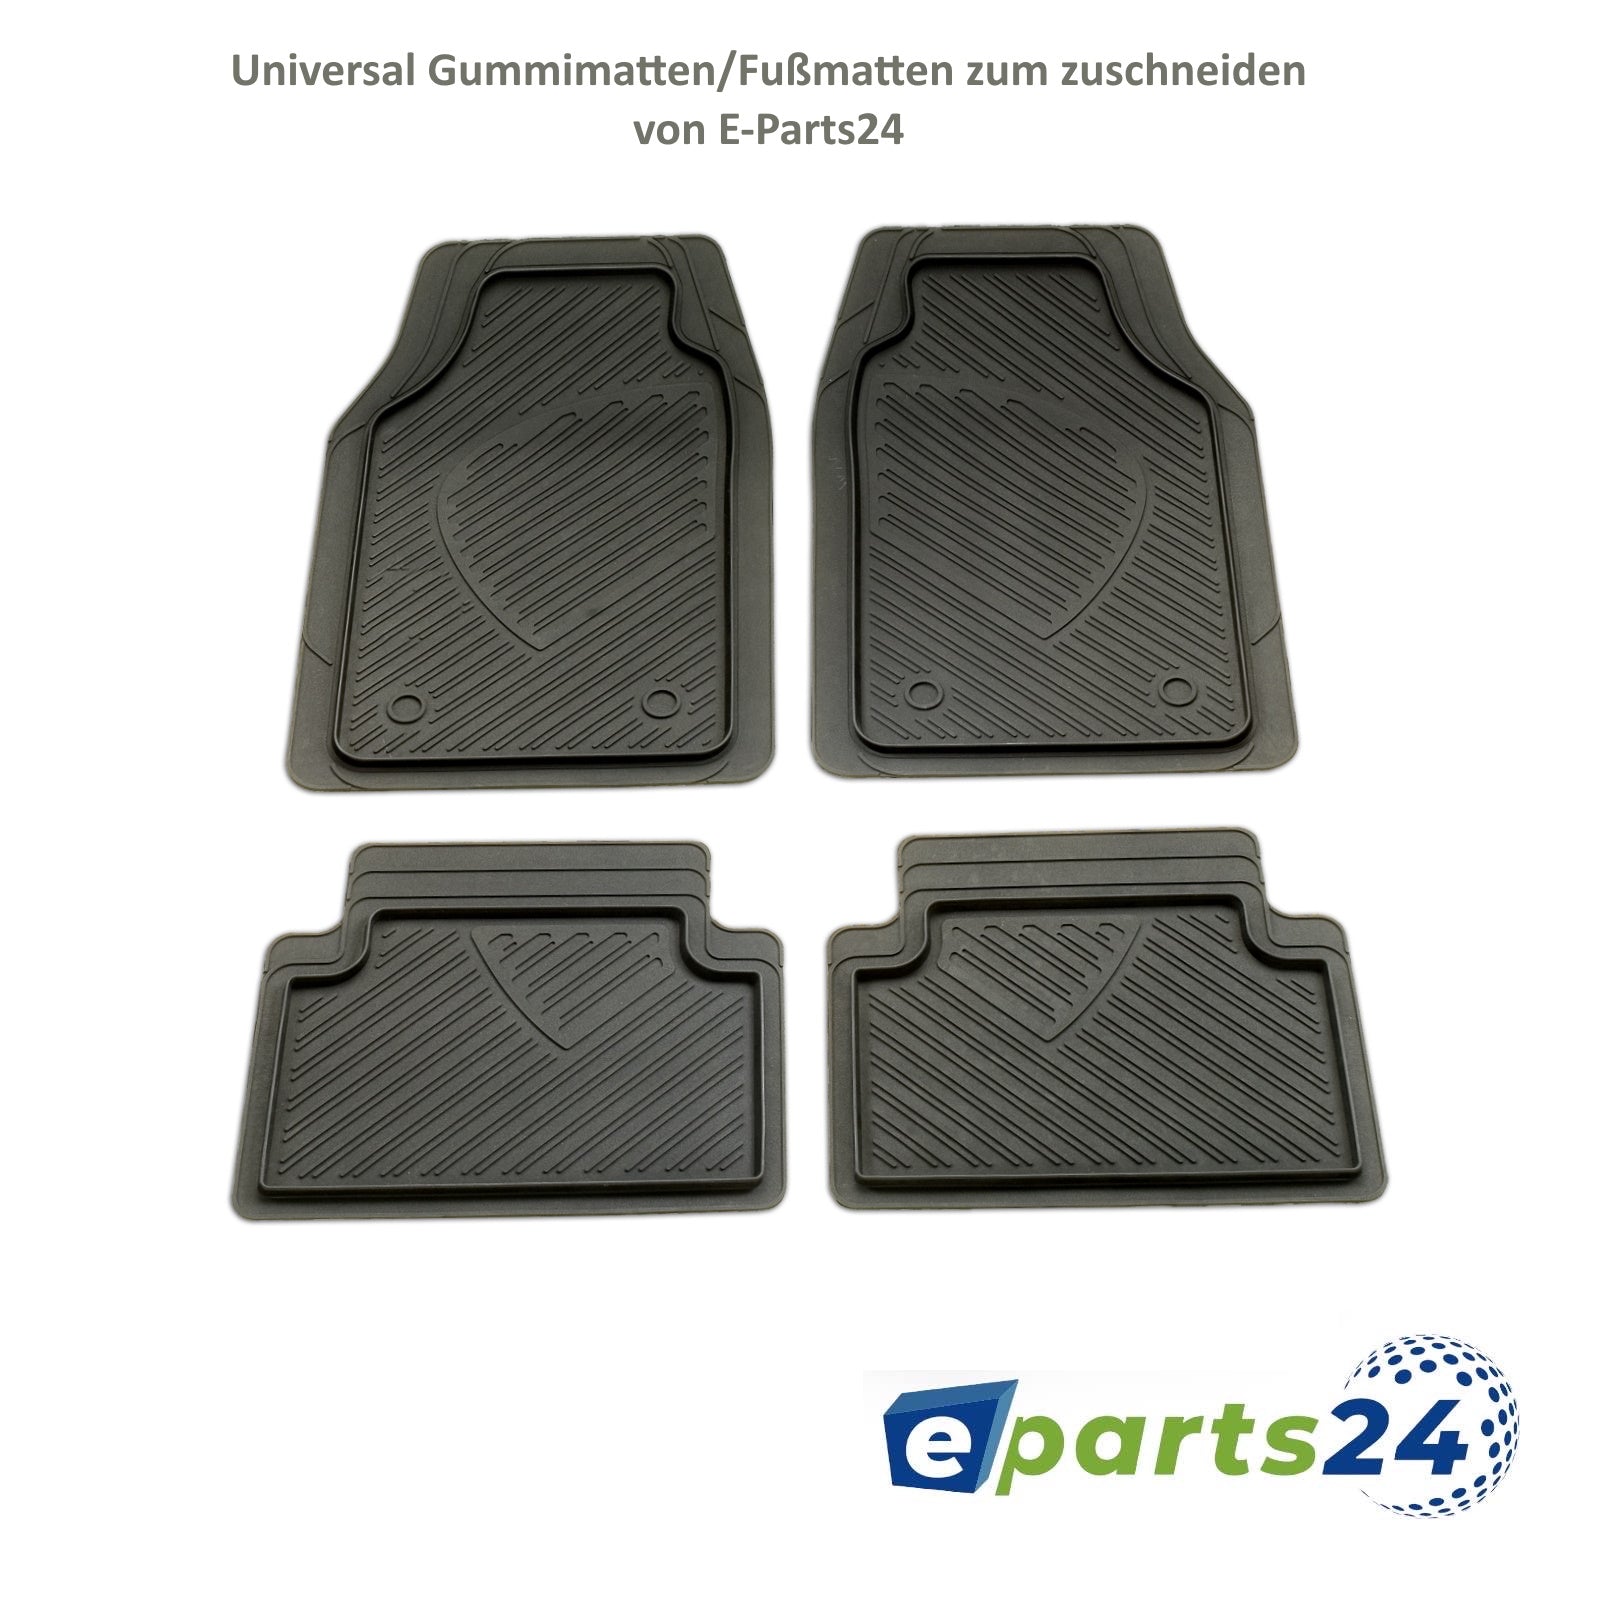 Automatten Fußmatten 3D Gummimatten universal 4 teilig zum zuschneiden –  E-Parts24